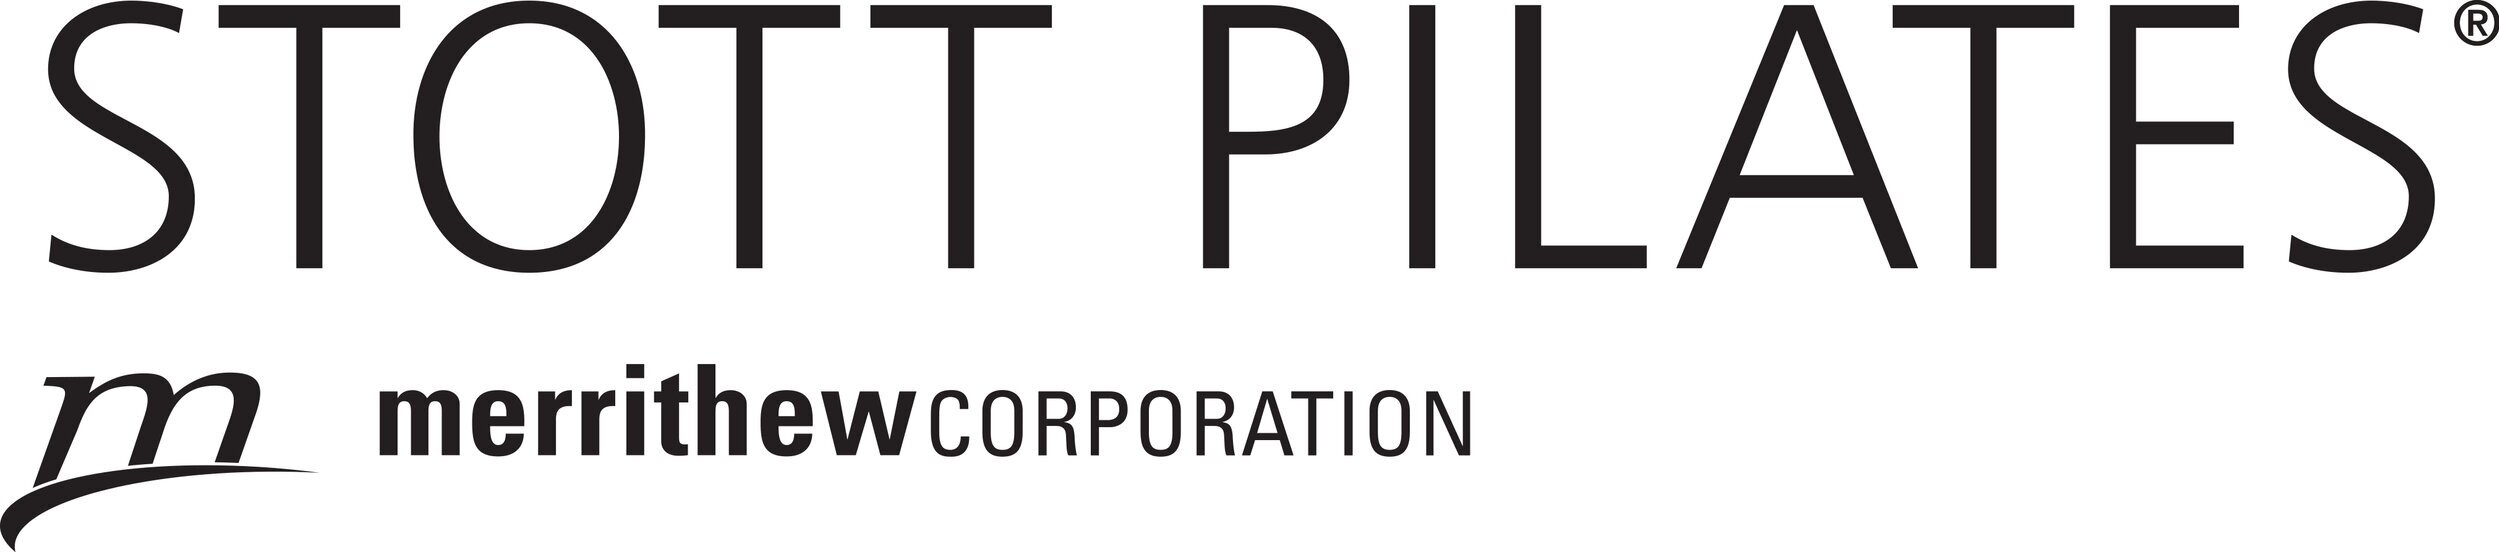 SPI+logo.jpg